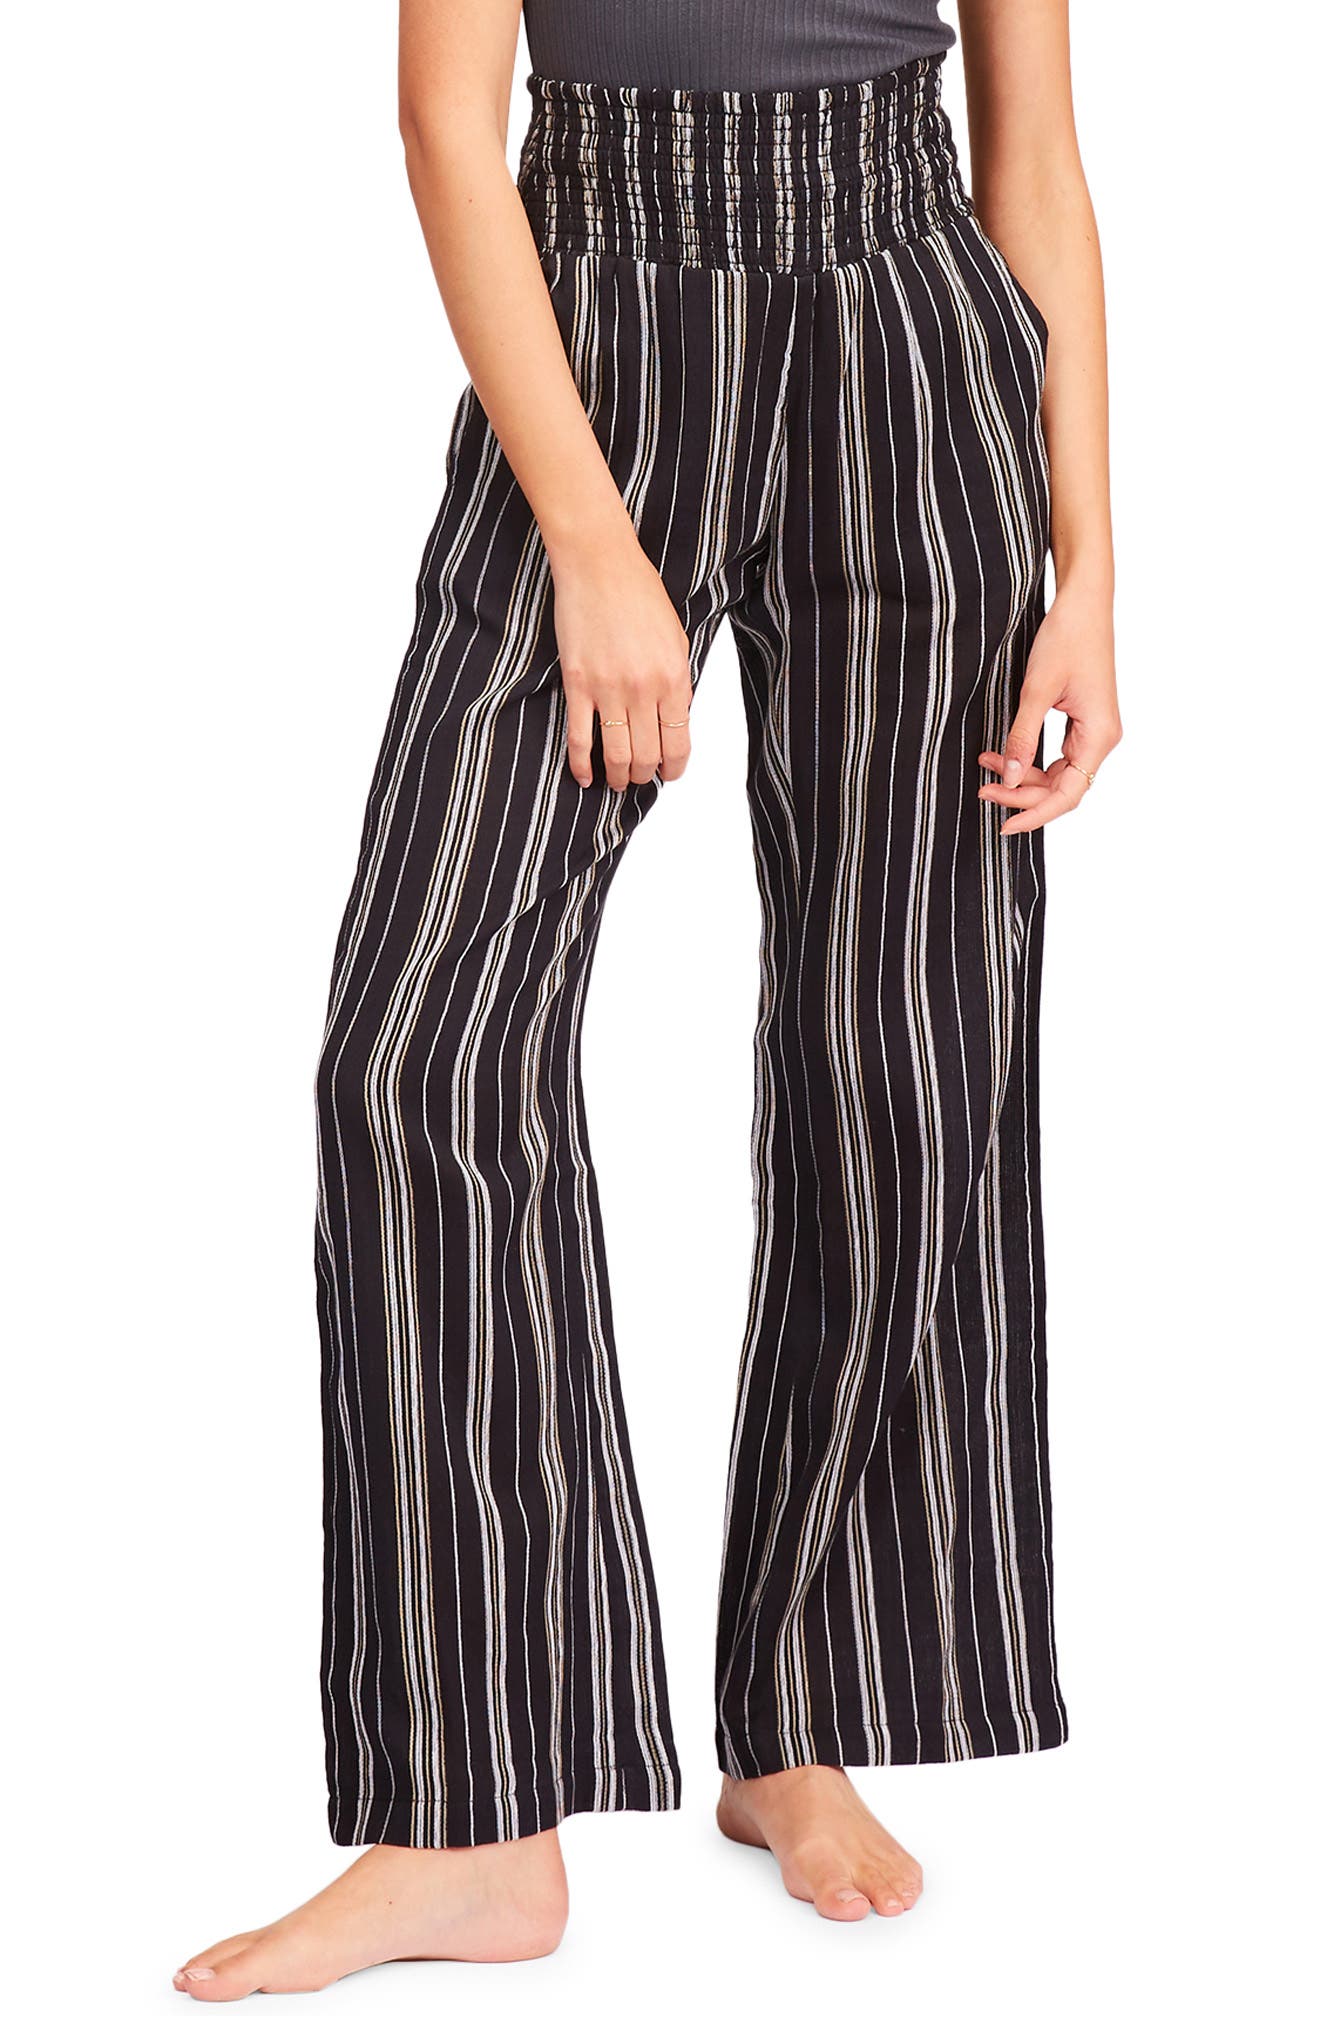 Fashion Women Casual Striped Print Ladies Wide Leg Slacks Pants Mikey Store 